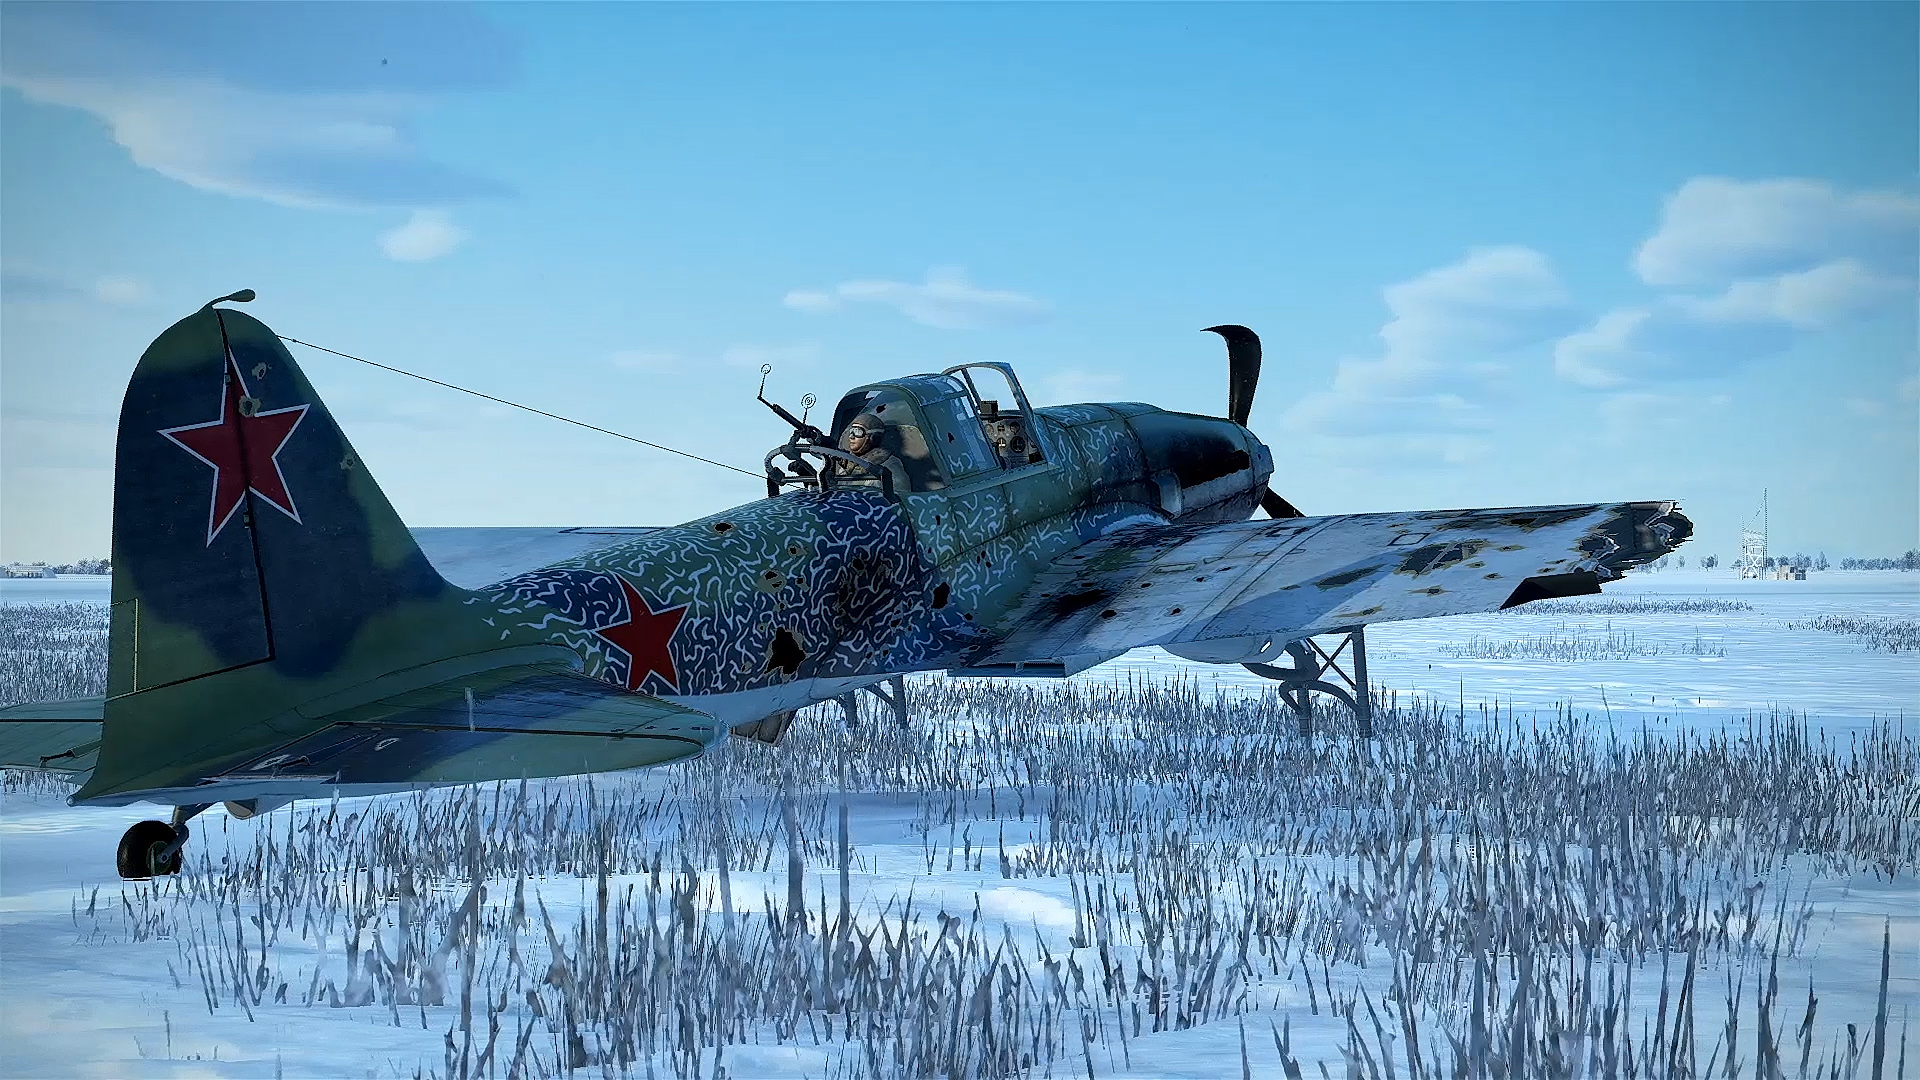 Разные аварийные ситуации  часть 7.
Авиасимулятор  "IL-2 Sturmovik Great Battles".